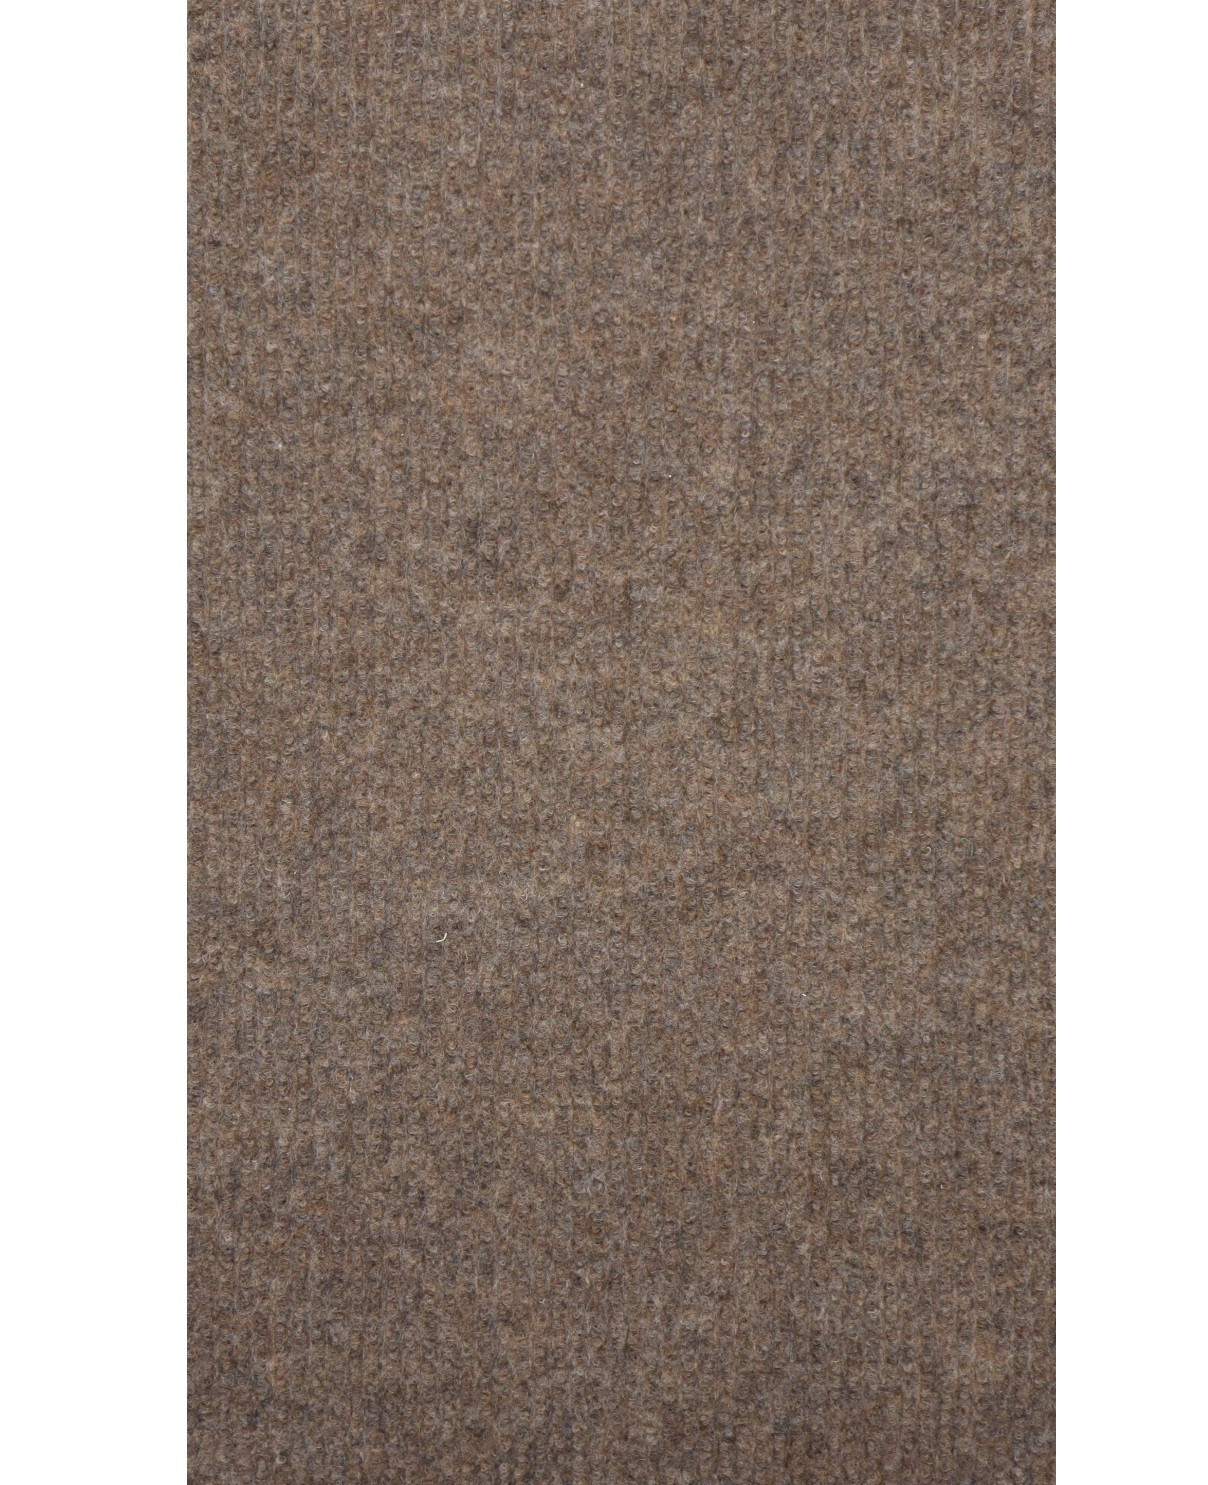 AKCE: 180x80 cm Běhoun na míru Polo hnědý (čistící zóna) - šíře 80 cm Aladin Holland carpets